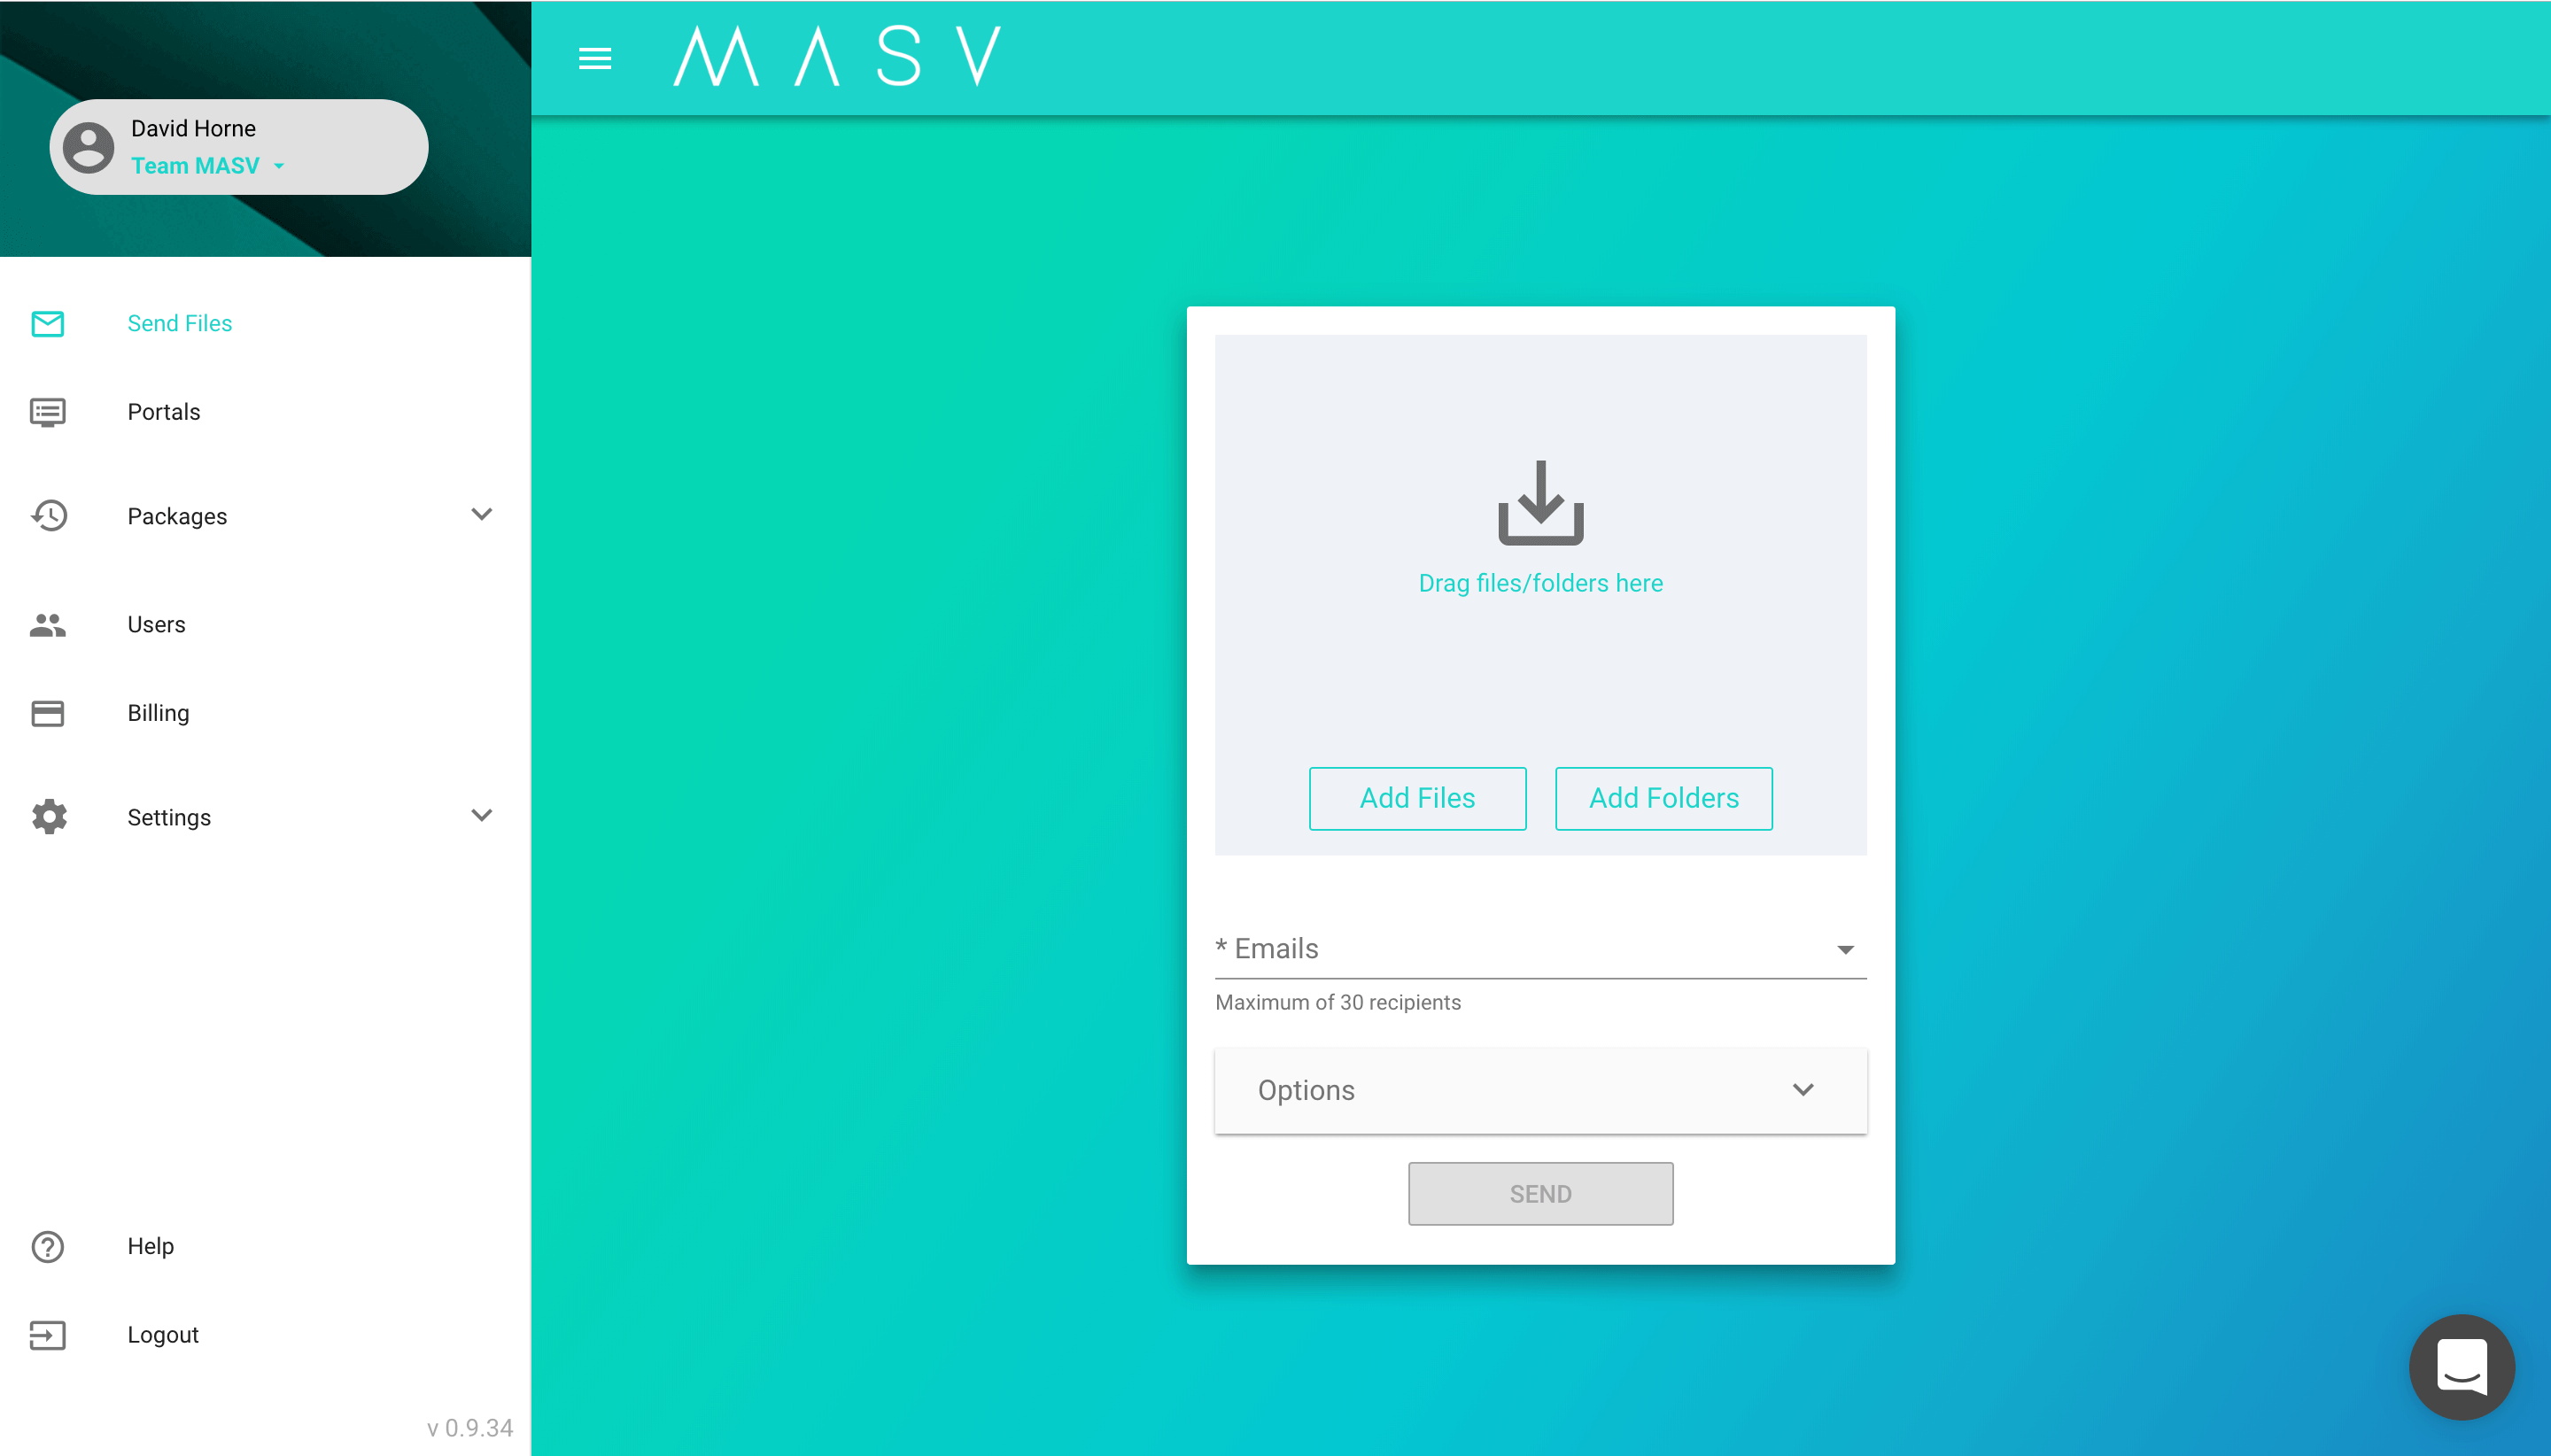 Le MASV est conçu pour être intuitif, de sorte que l'équipe de votre festival de cinéma puisse l'utiliser sans aucune difficulté.